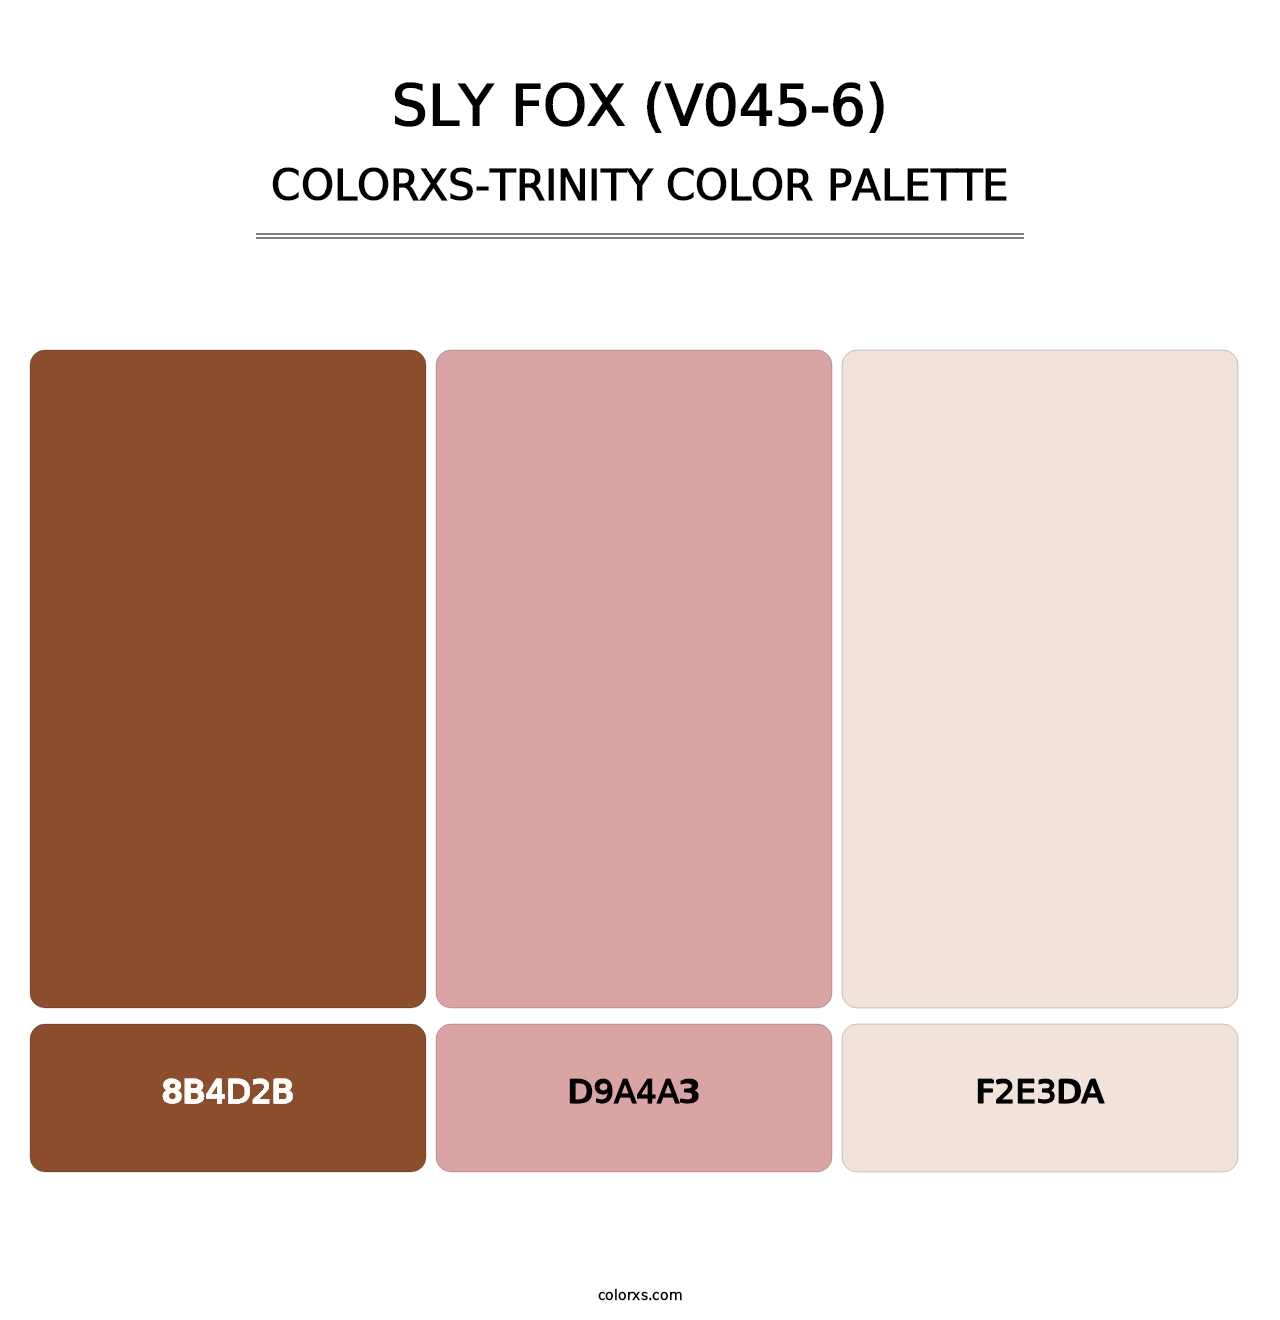 Sly Fox (V045-6) - Colorxs Trinity Palette